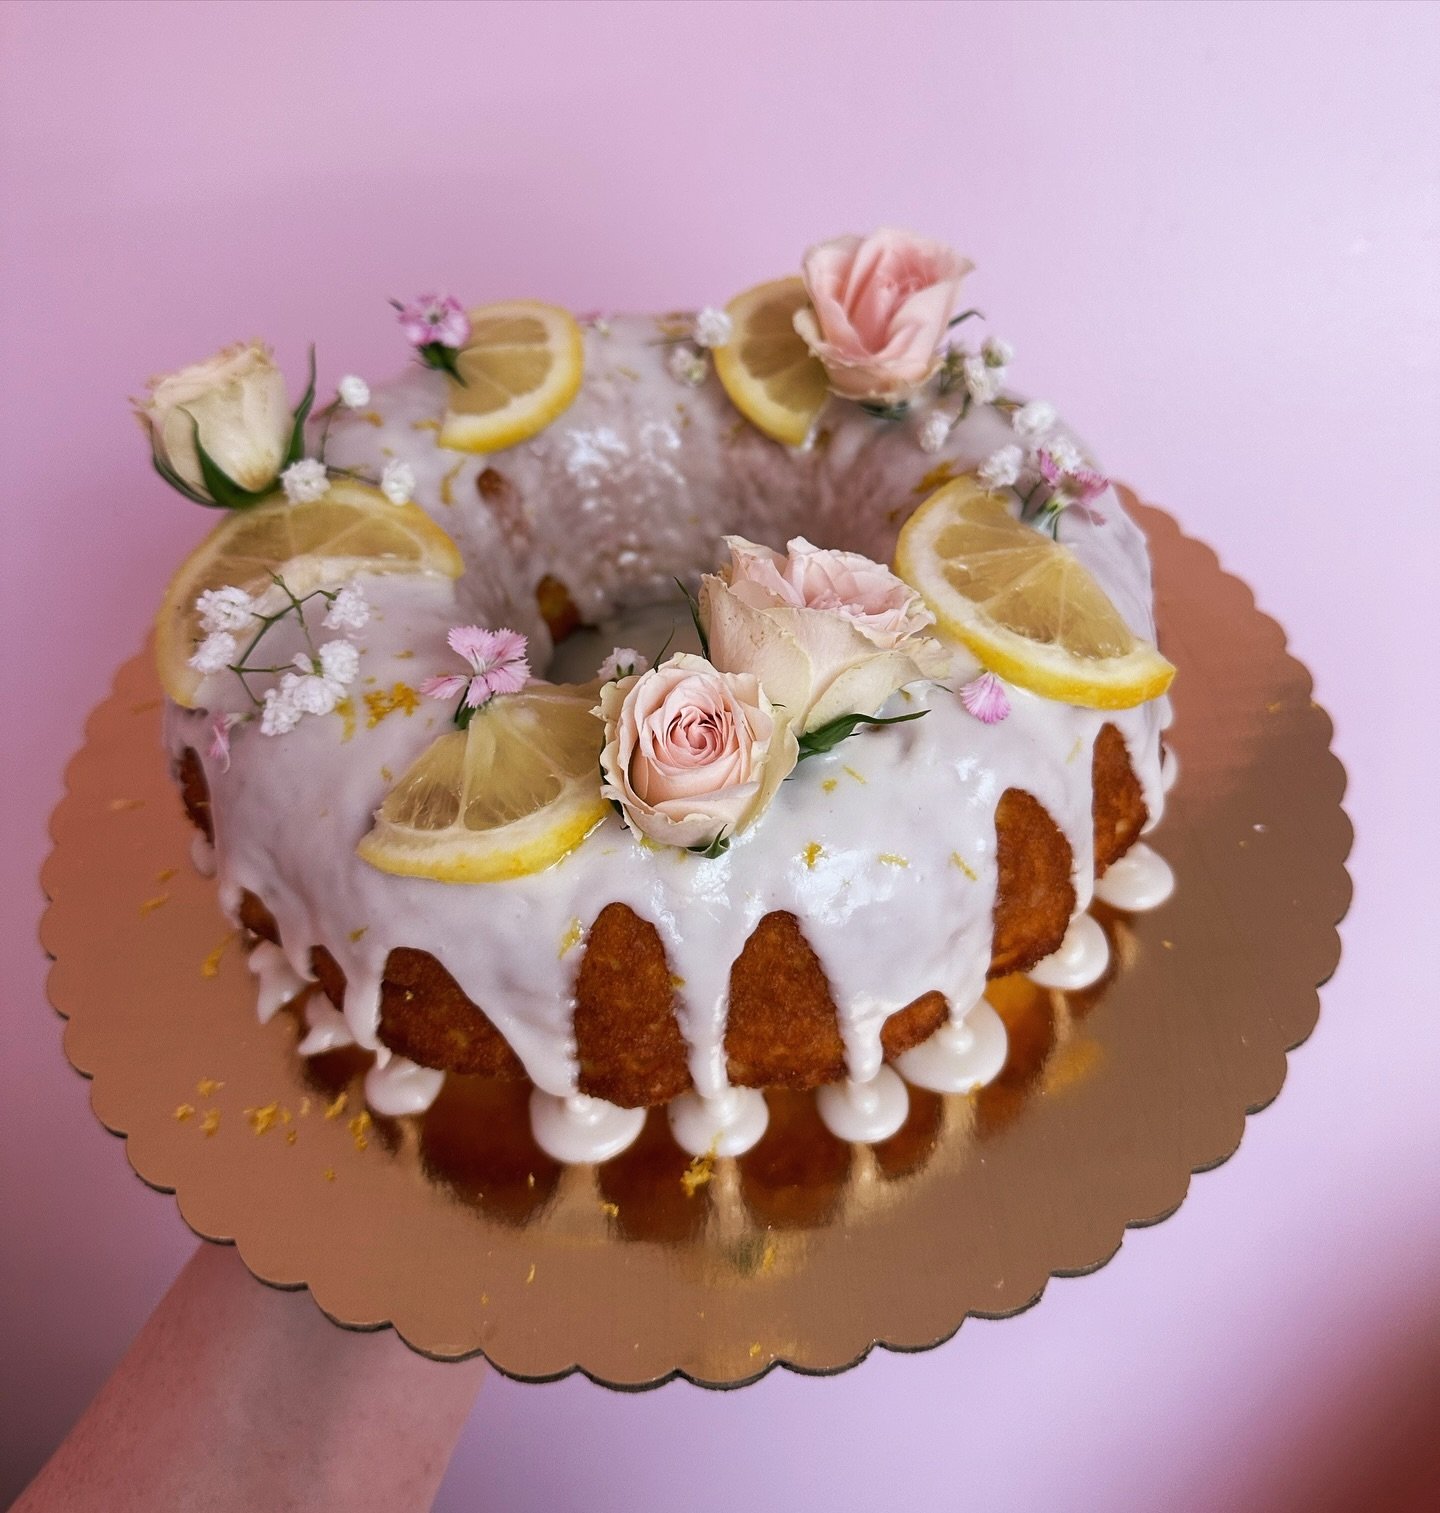 This lemon bundt cake is the perfect addition to this gorgeous spring weather! 🍋🍰
&bull;
Order yours at kaileycakes.com! 😊
&bull;
&bull;
&bull;
&bull;
&bull;
#cake #cakedecorating #cakedesign #cakeoftheday #cakeart #bundtcake #cakecakecake #cakest